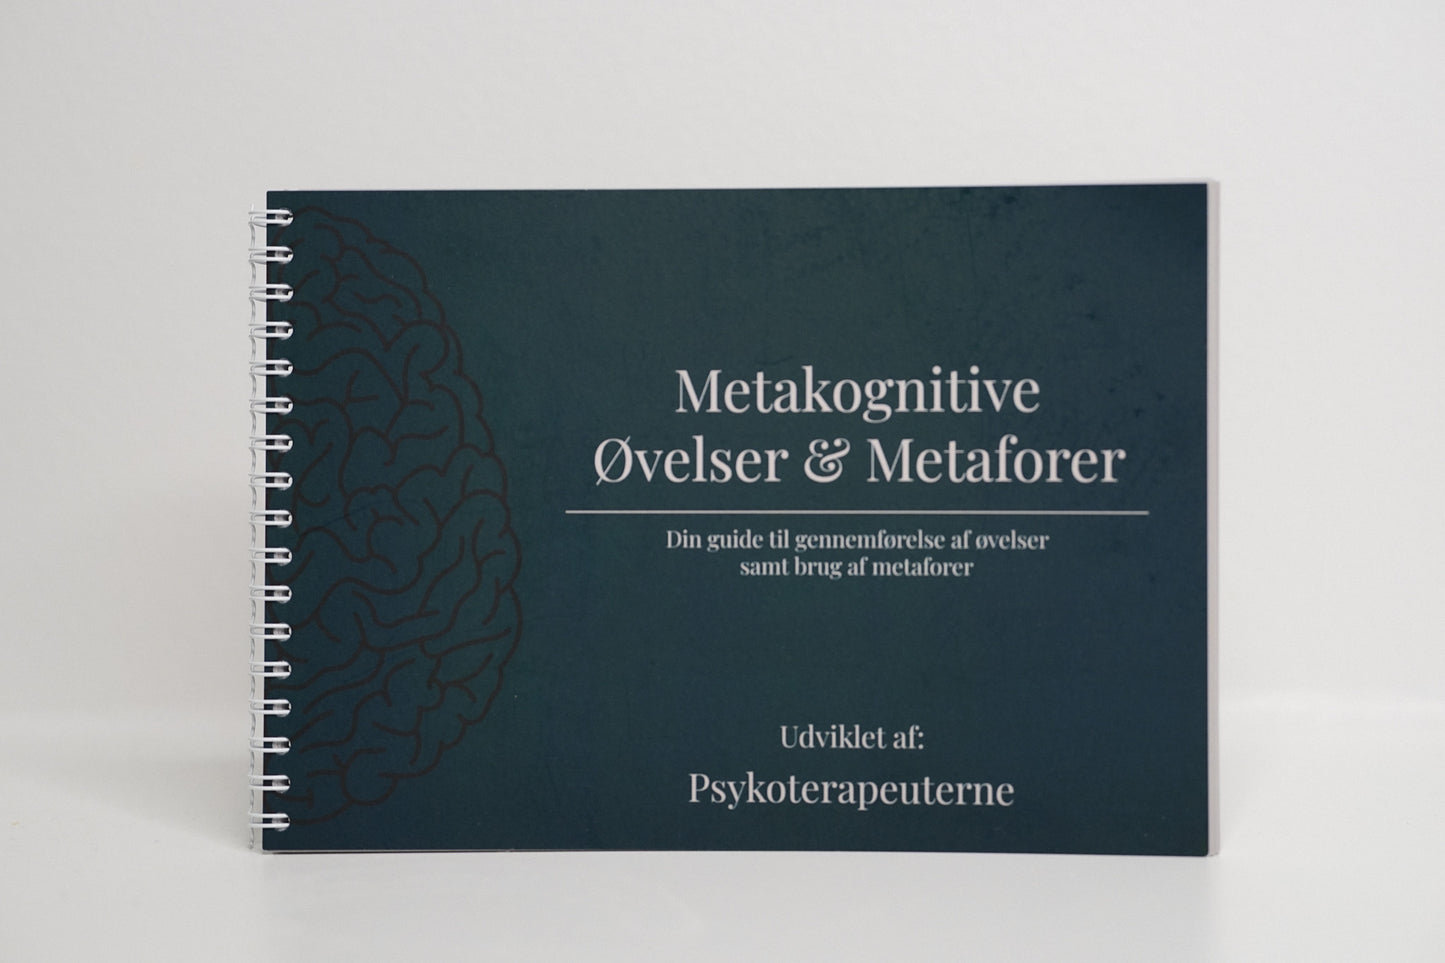 Metakognitive Øvelser & Metaforer.